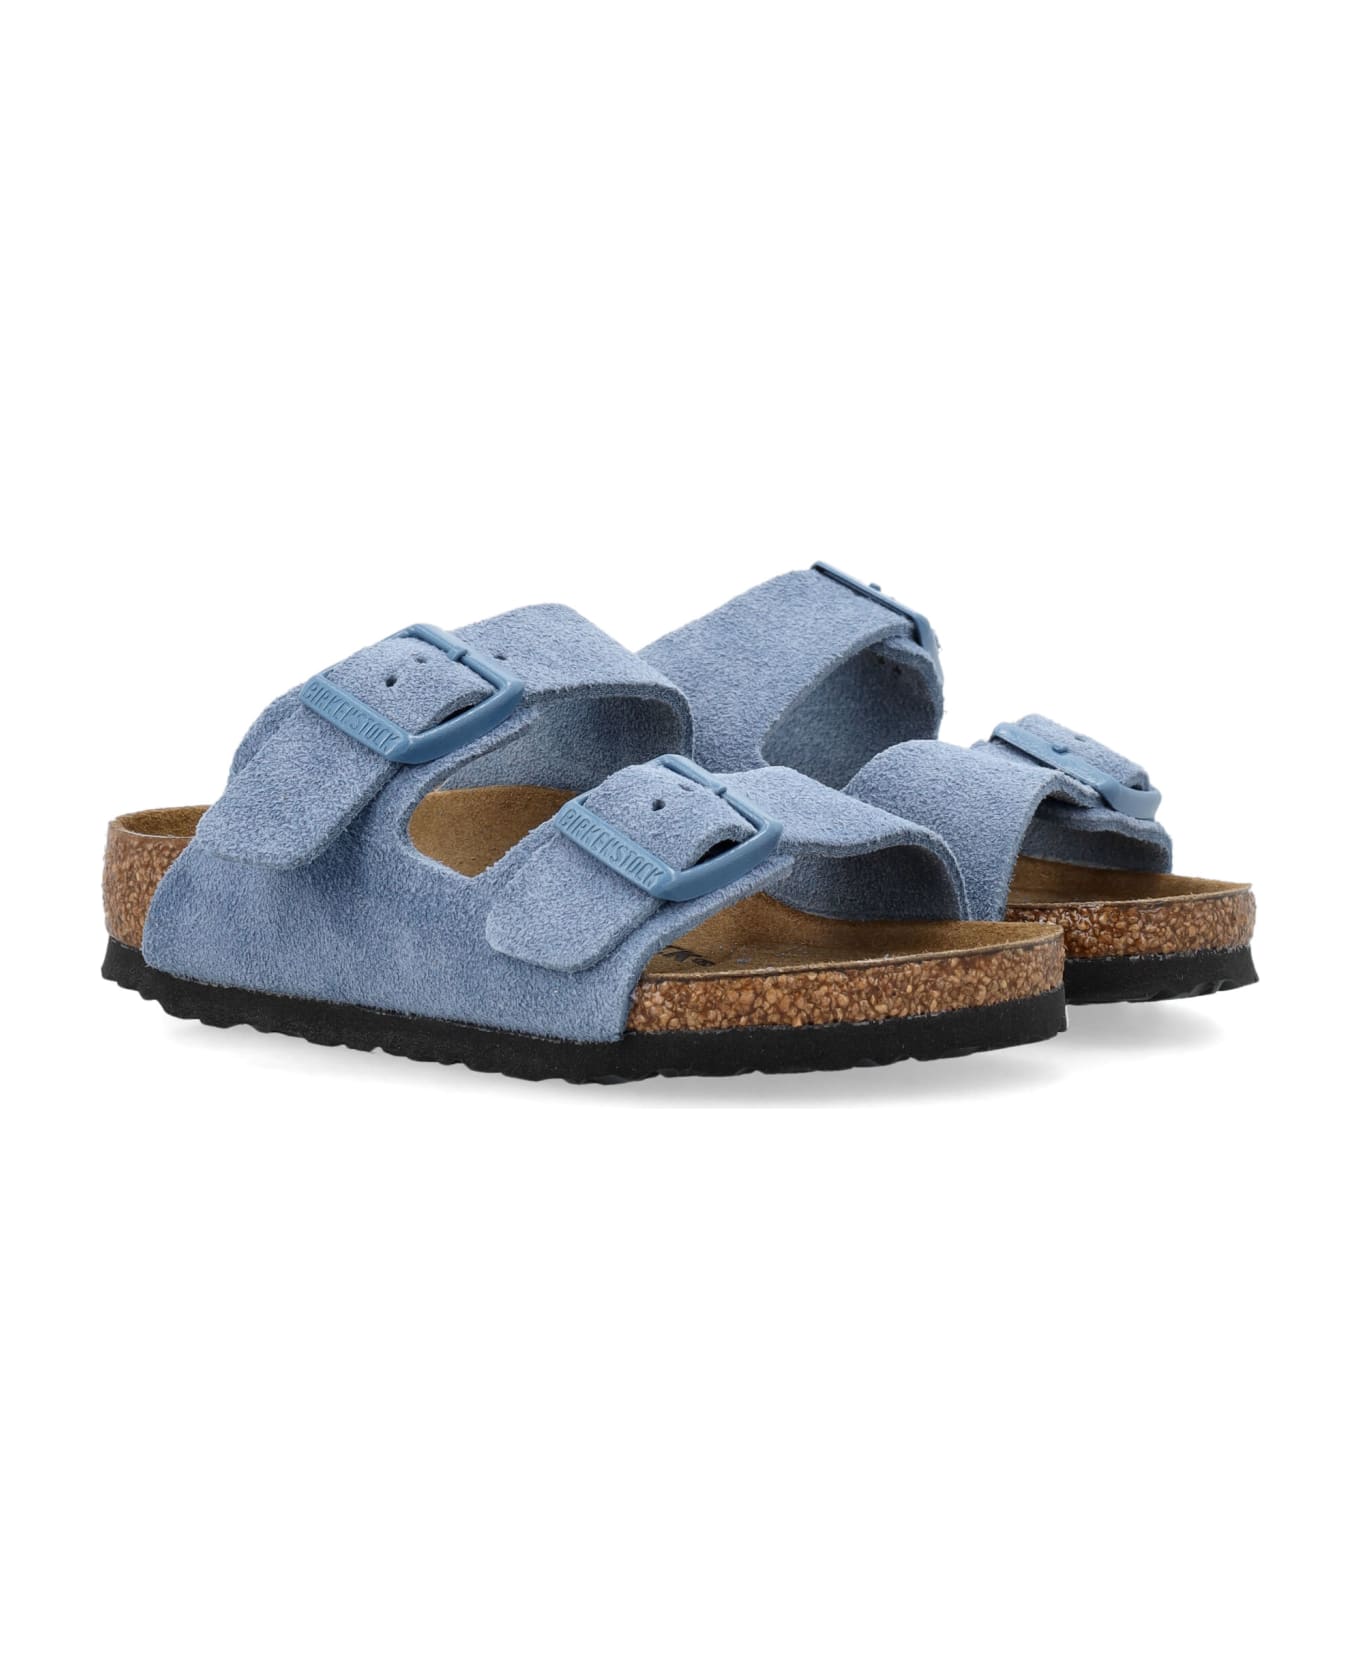 Birkenstock Arizona Sandals - BLUE